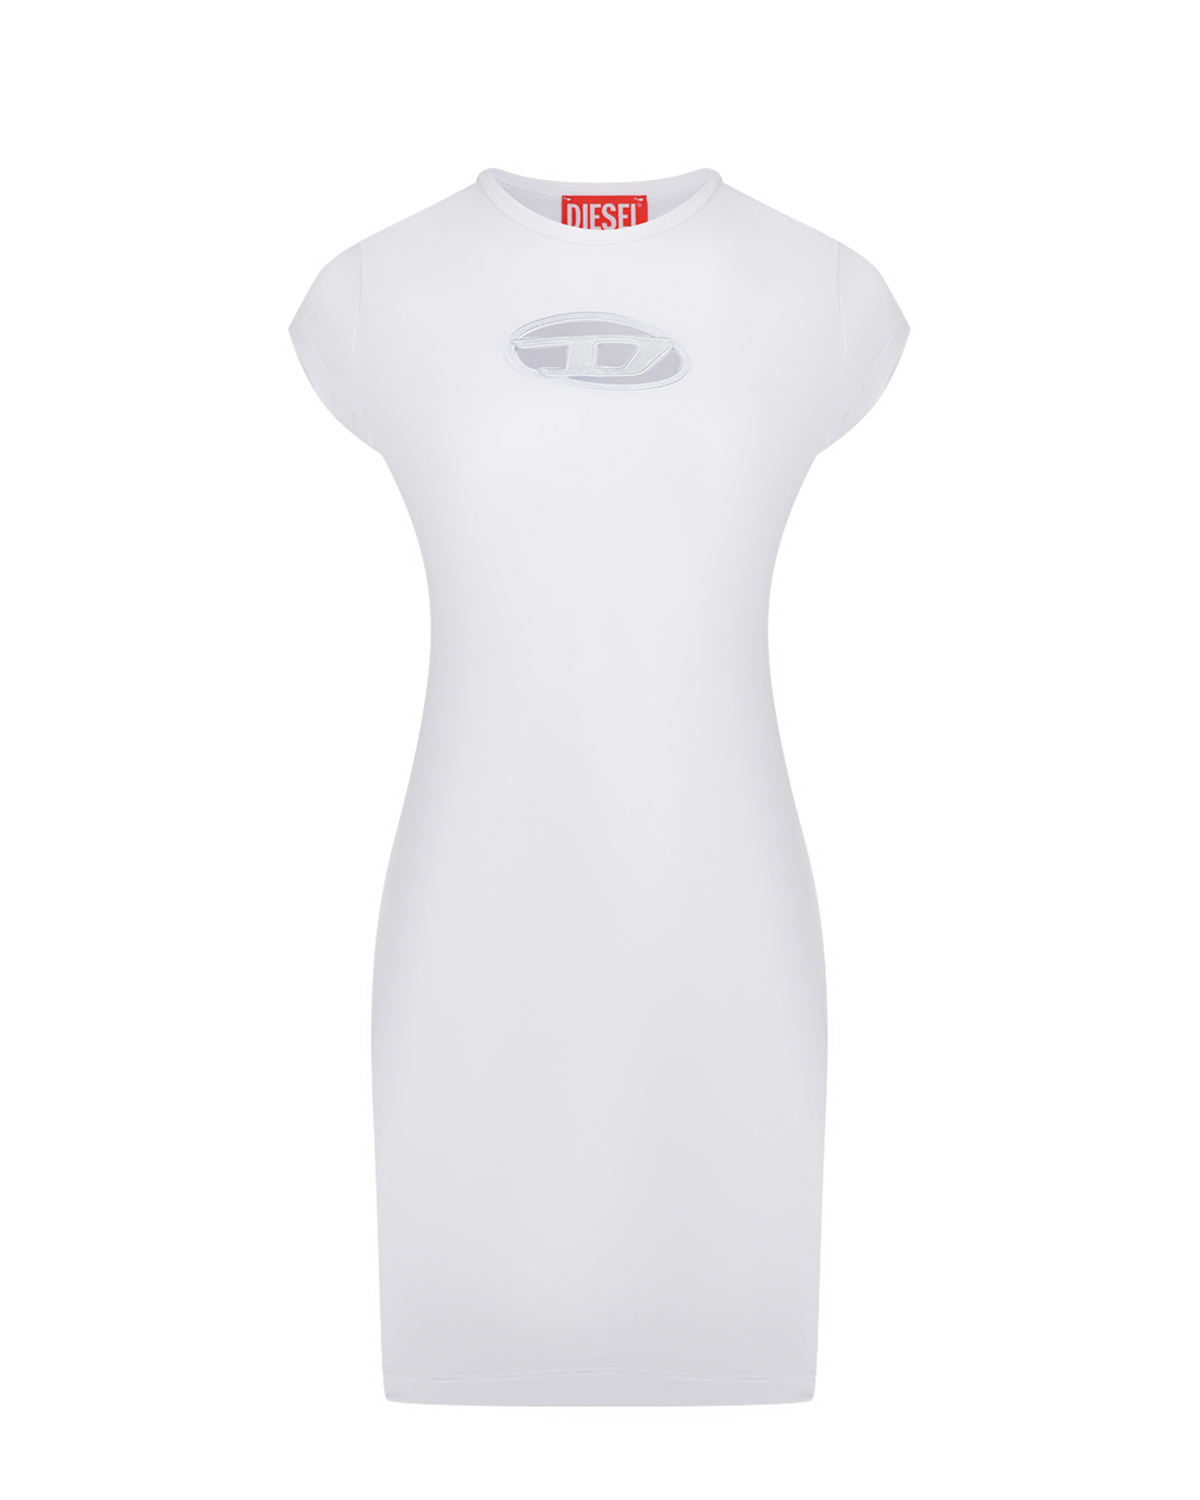 Платье-футболка с лого Diesel, размер 40, цвет белый - фото 1